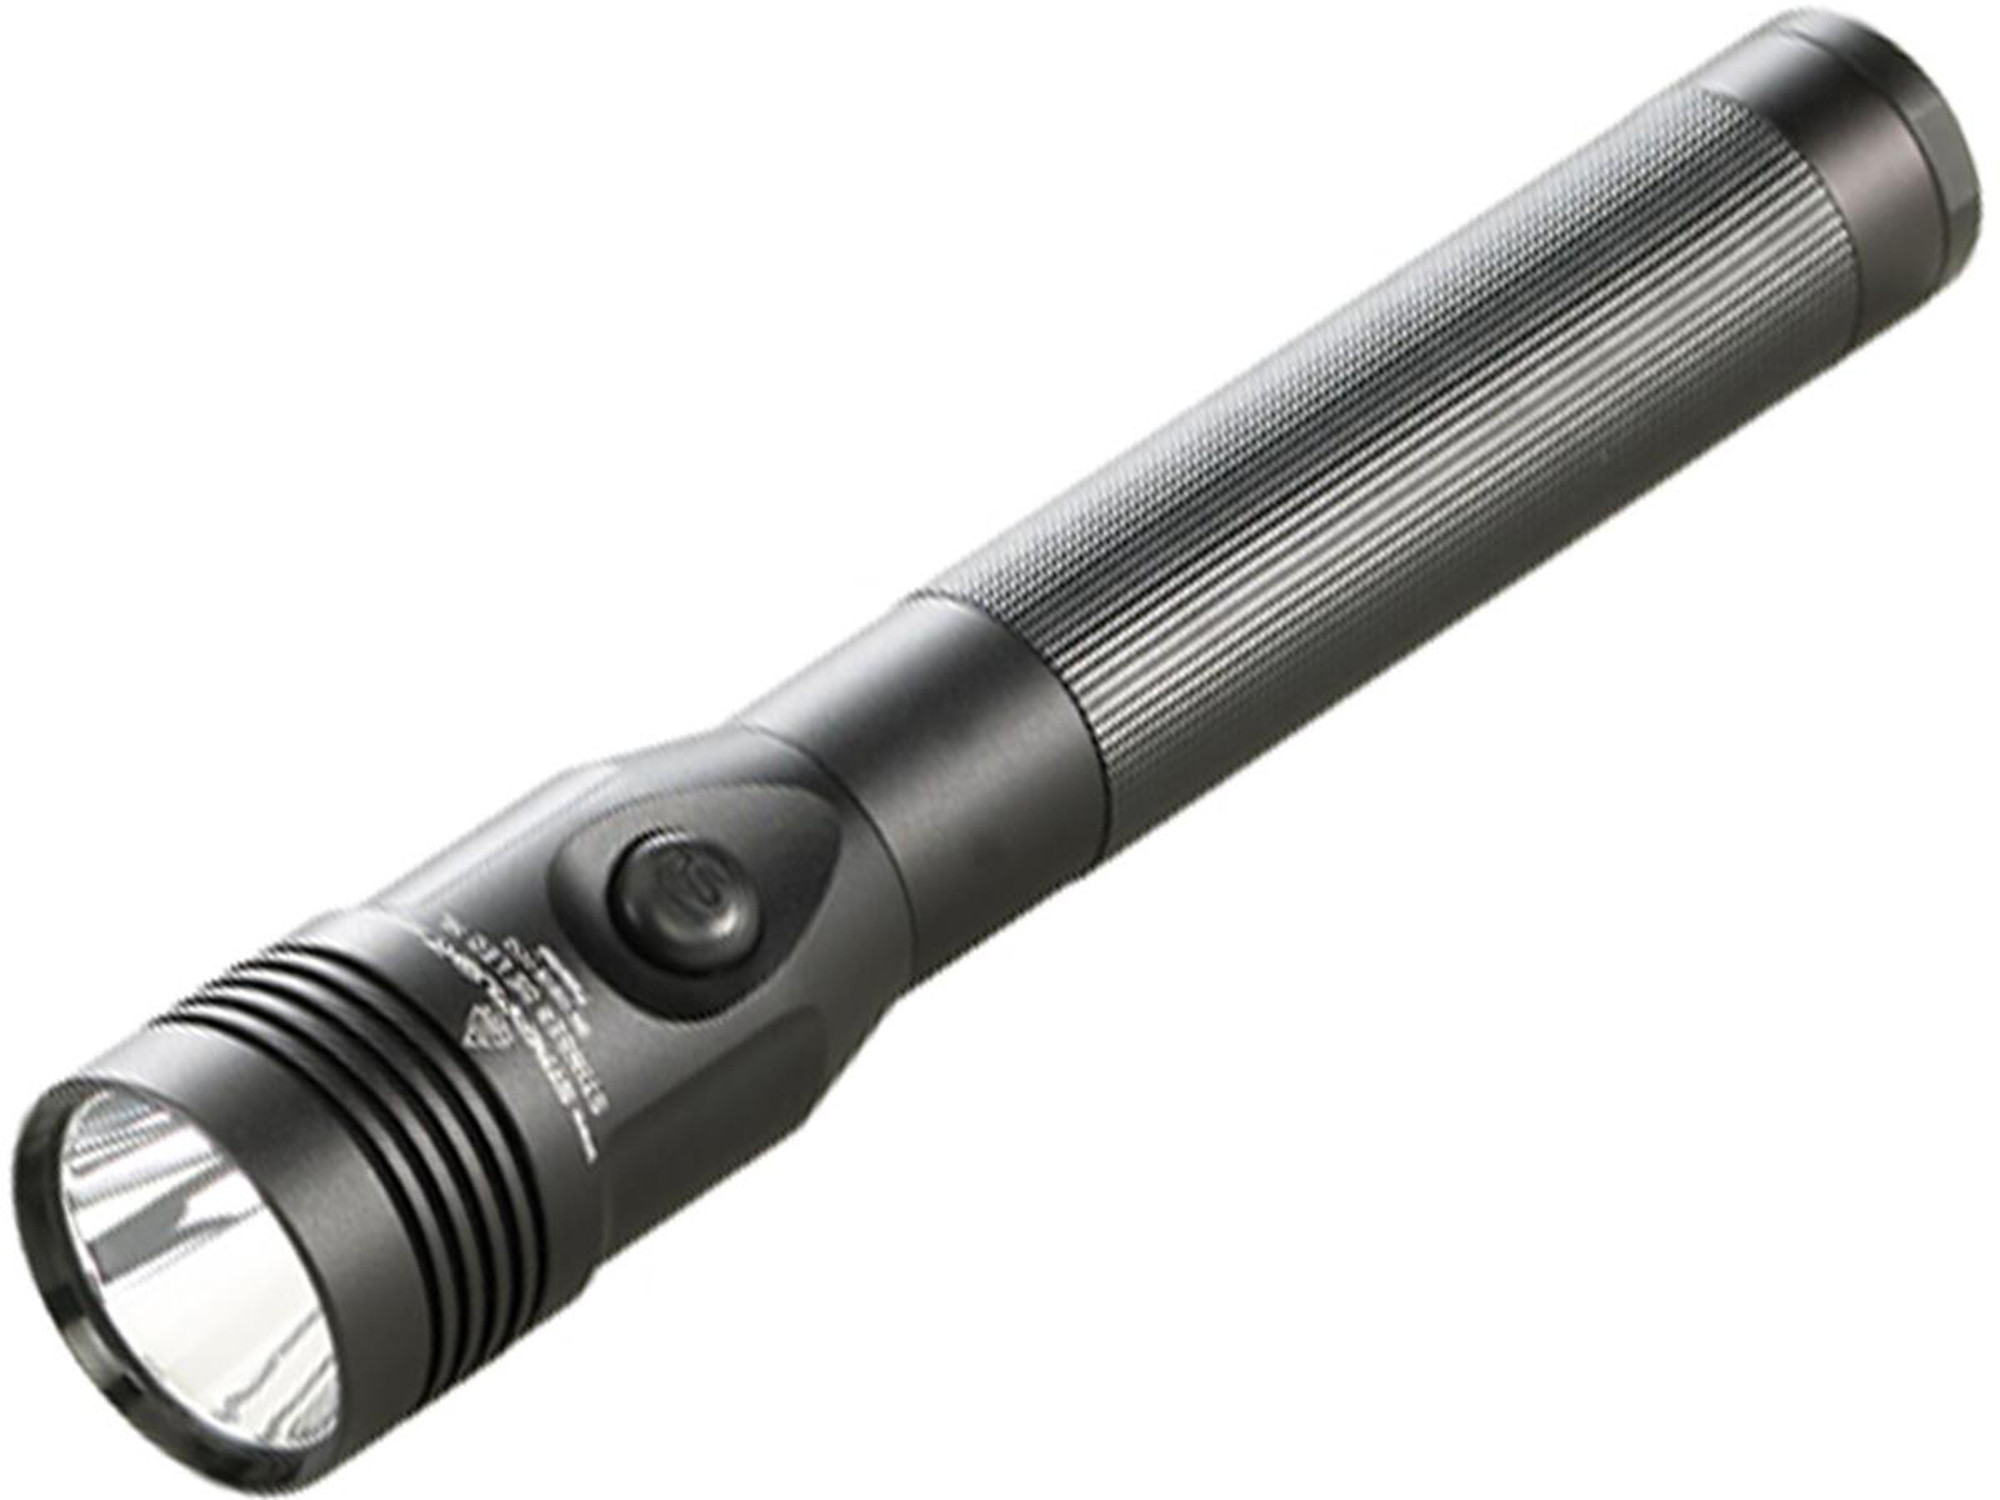 Streamlight Stinger DS LED HL 800 Lumen Rechargeable Flashlight